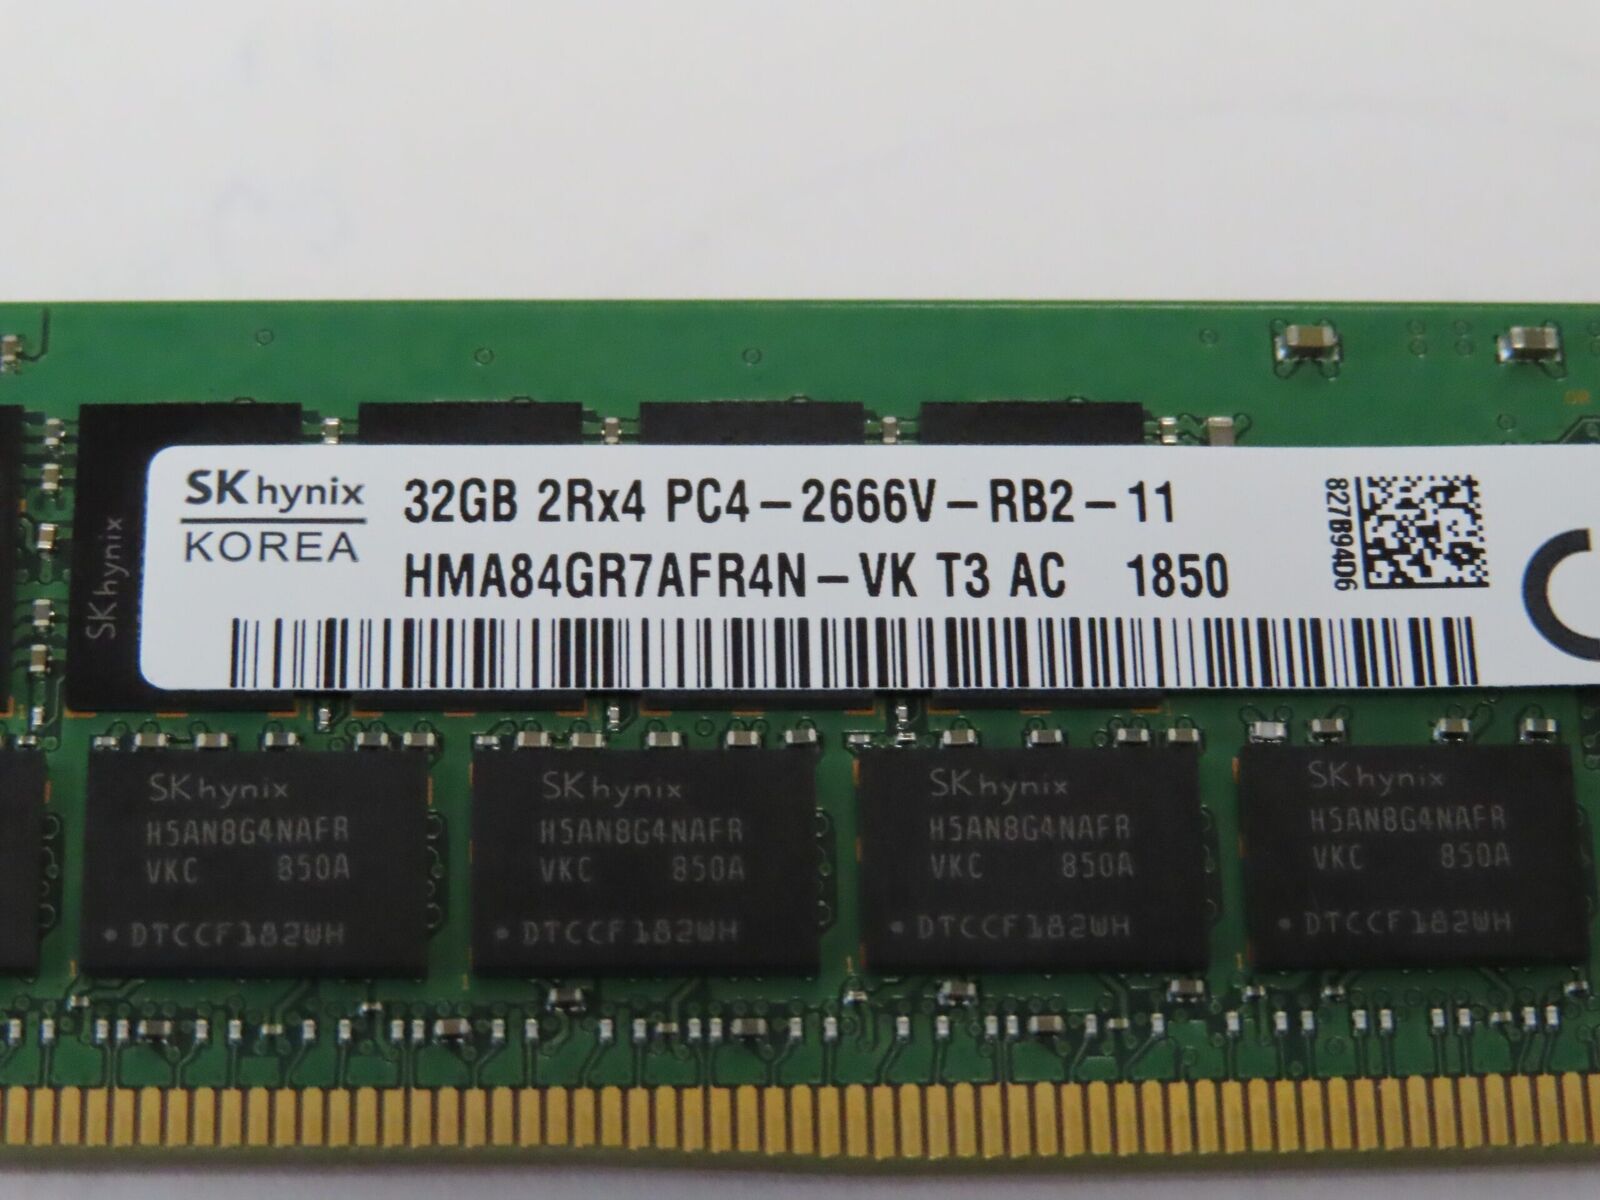 128GB = 4x 32GB 2Rx4 2666V Dell Poweredge R630 R640 R730 R740 ECC Server Memory